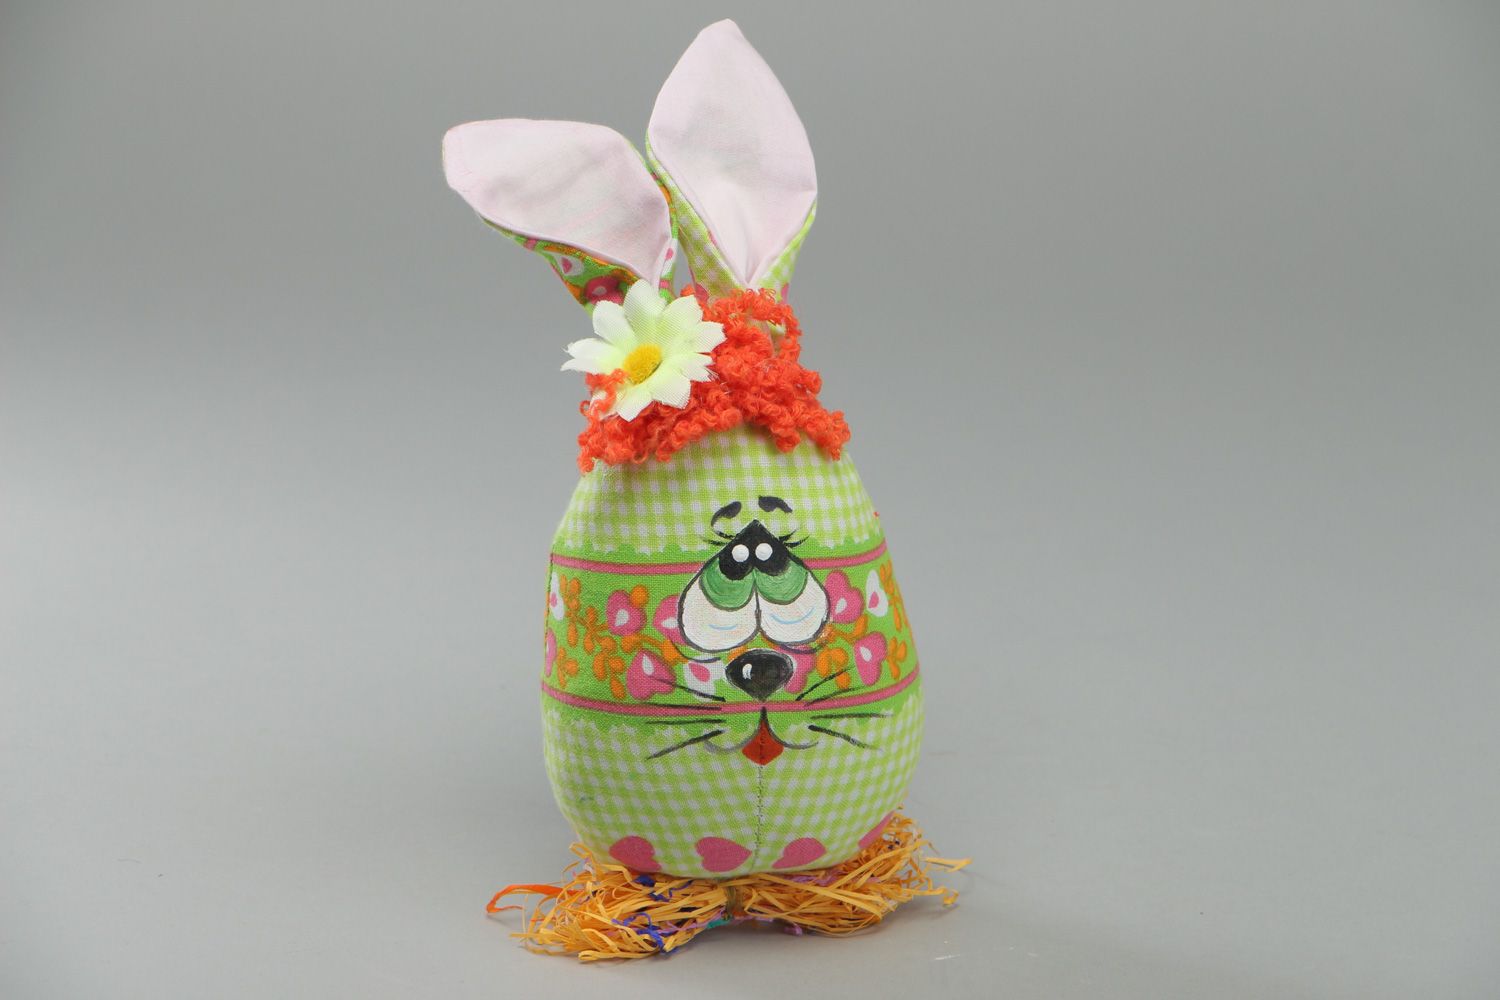 Мягкая игрушка из ткани пошитая вручную Пасхальный кролик-яйцо фото 1